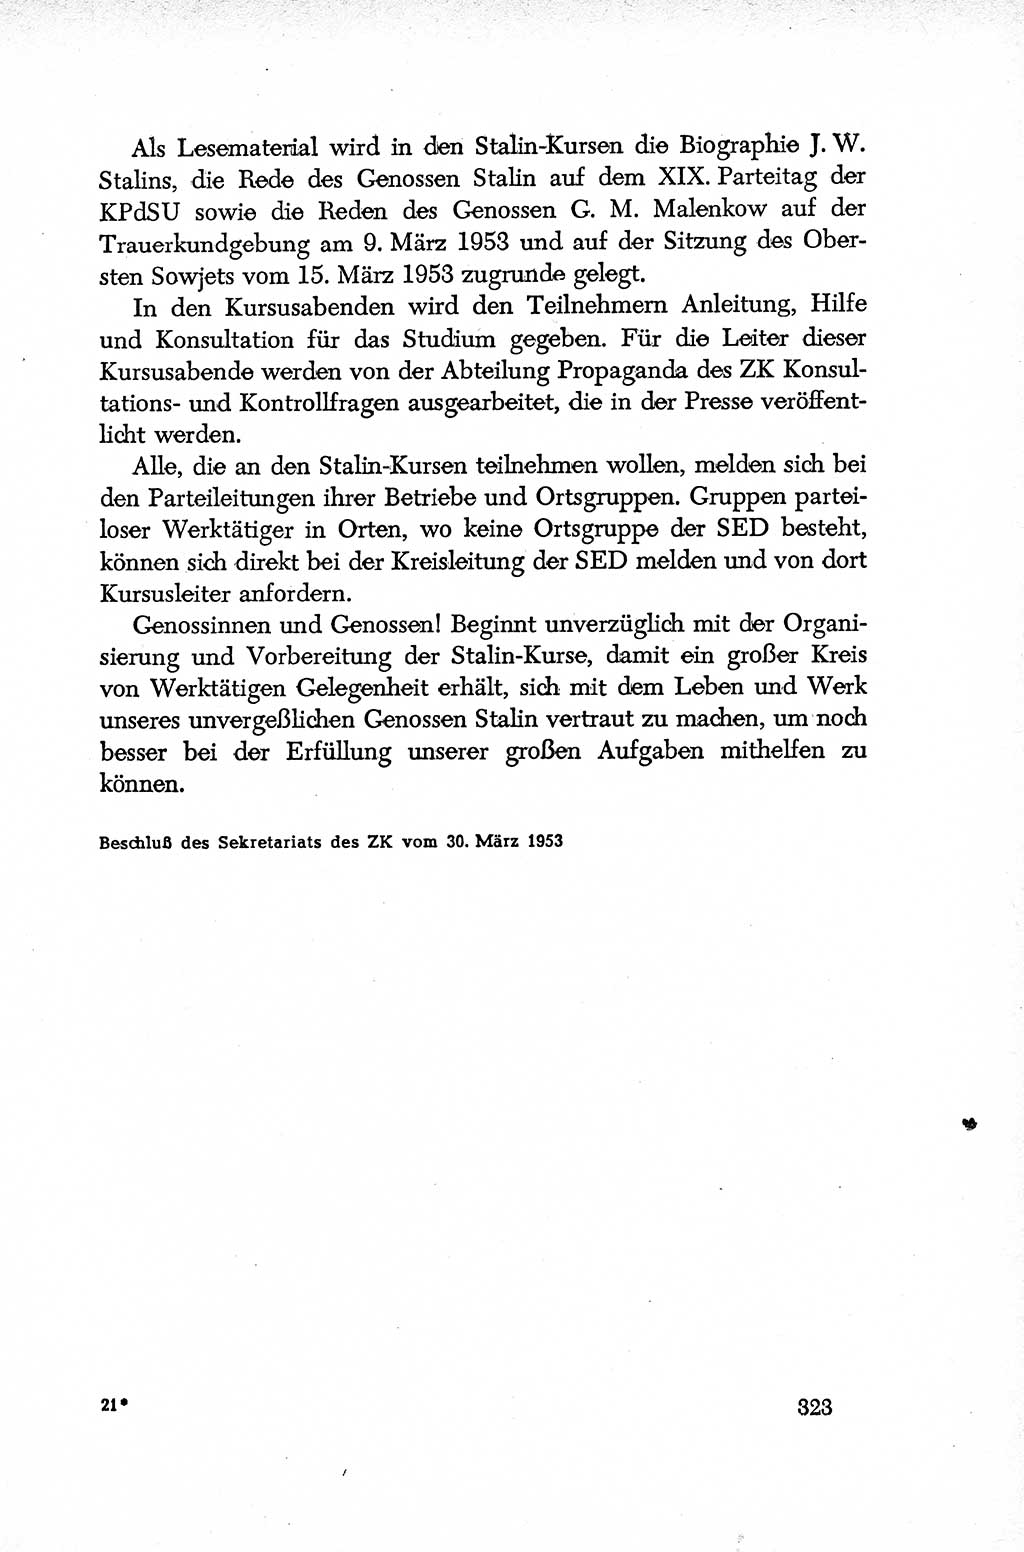 Dokumente der Sozialistischen Einheitspartei Deutschlands (SED) [Deutsche Demokratische Republik (DDR)] 1952-1953, Seite 323 (Dok. SED DDR 1952-1953, S. 323)